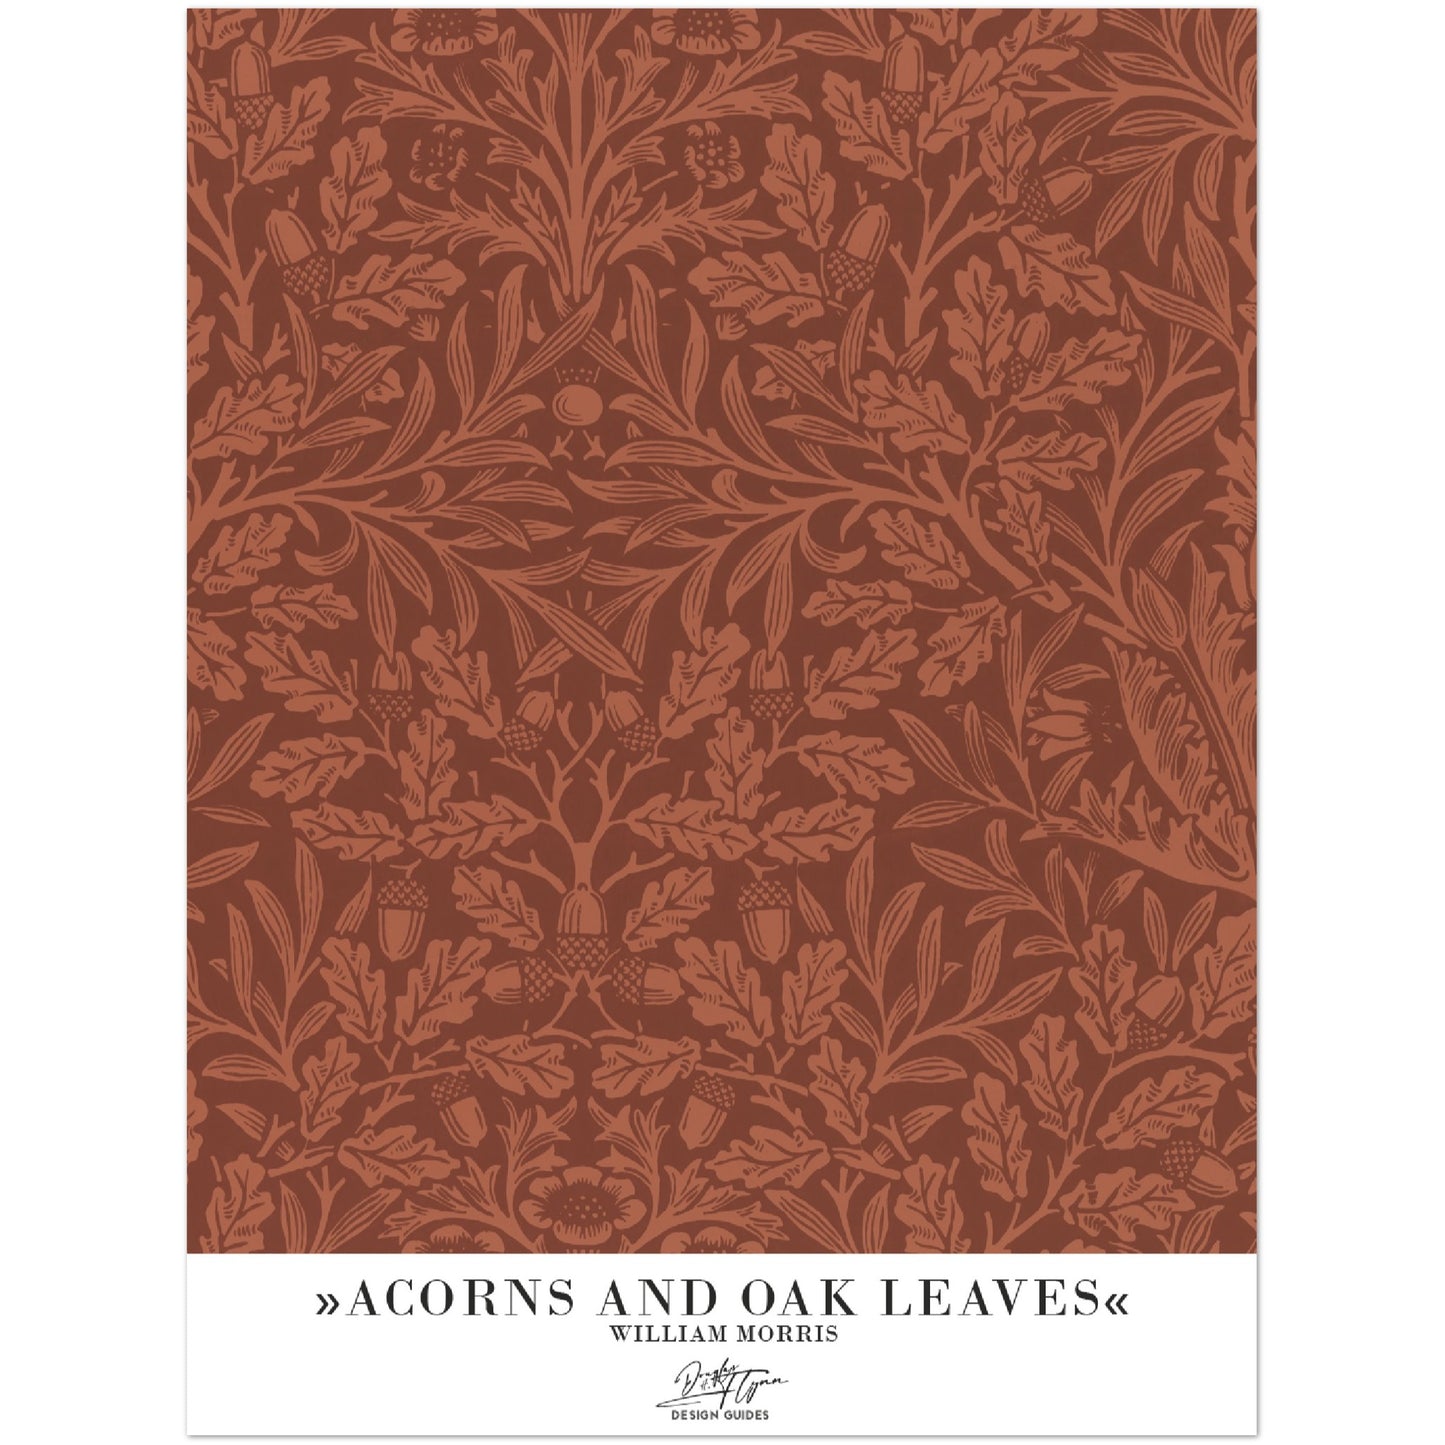 »Acorns and oak leaves«